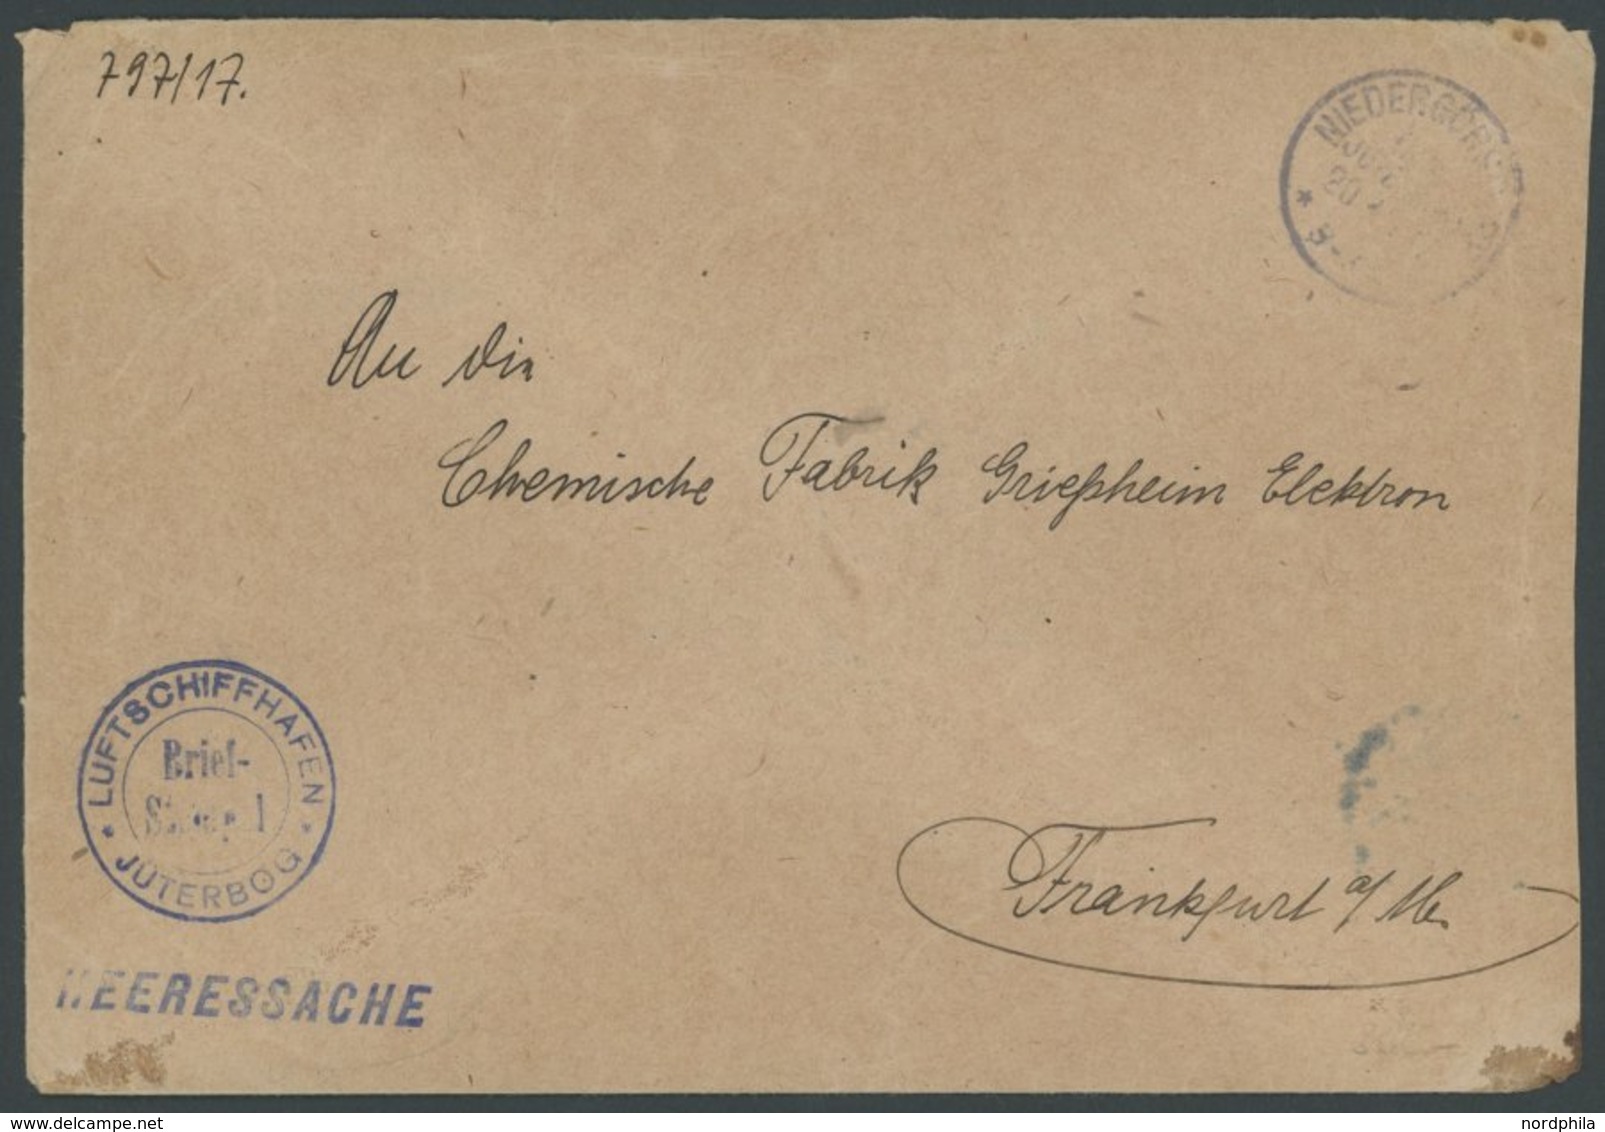 LUFTFAHRT IM I. WELTKRIEG 1916, LUFTSCHIFFHAFEN JÜTERBOG, Blauer Briefstempel Auf Heeressache, Feinst - Avions